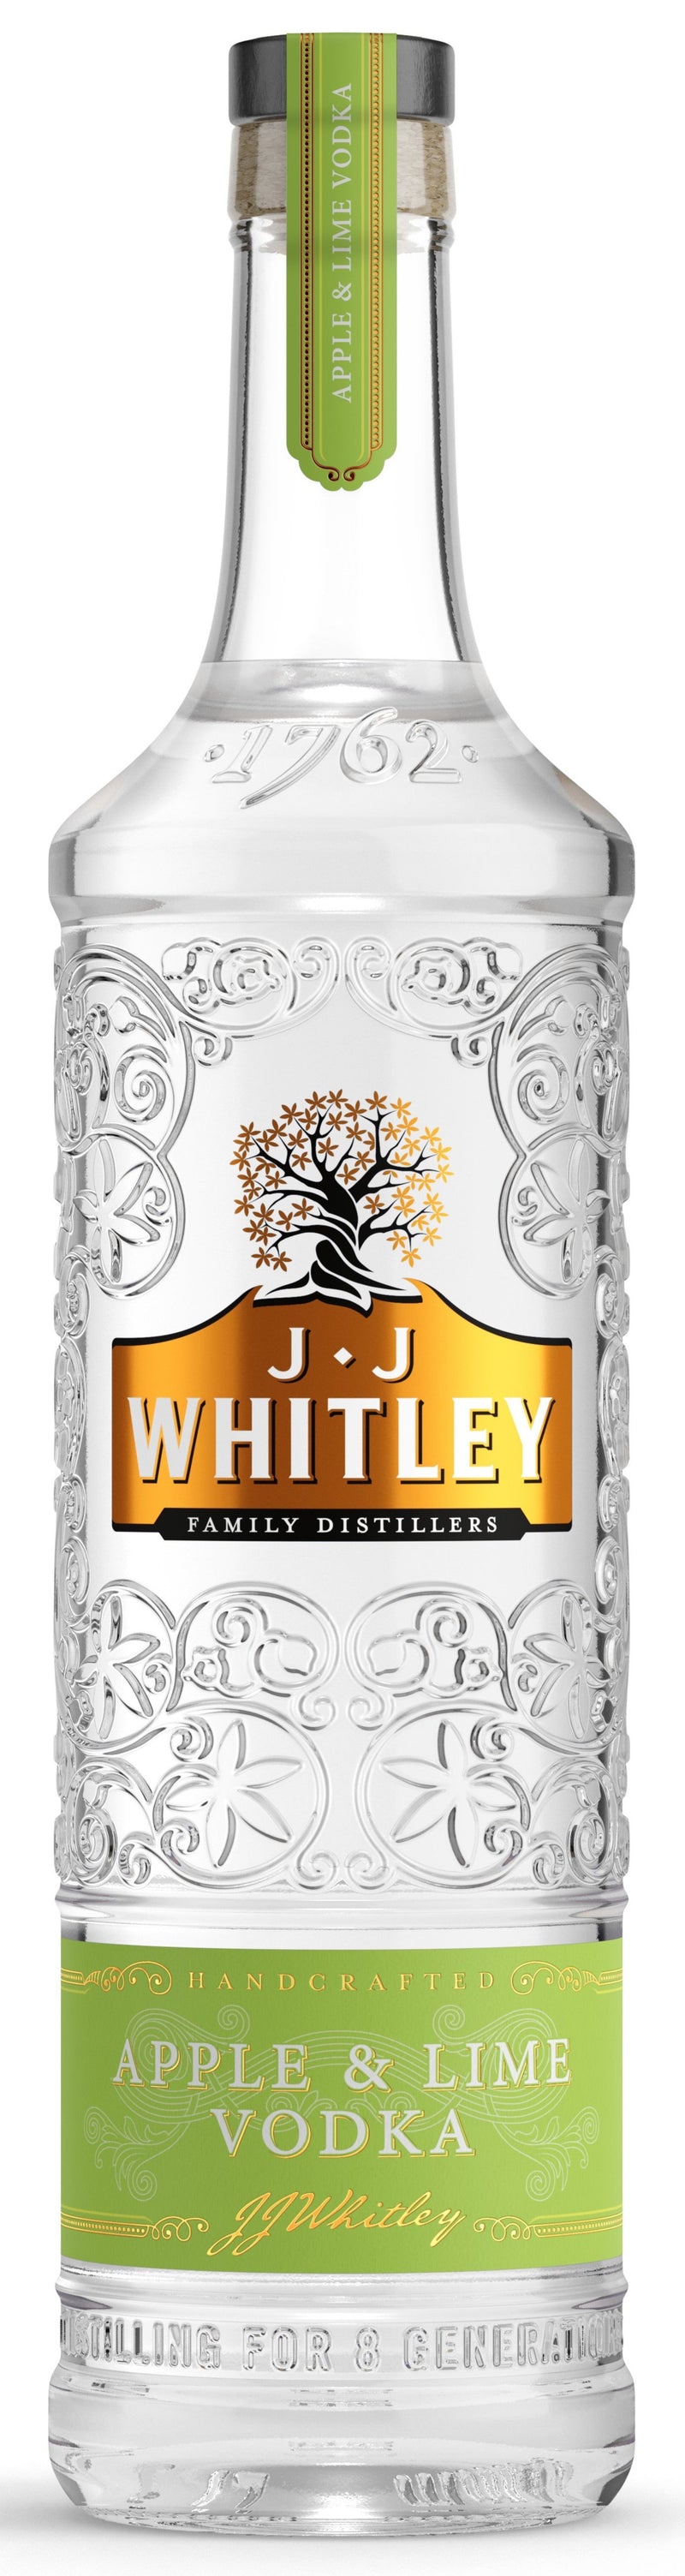 J.J. Whitley Apple & Lime Vodka 70cl